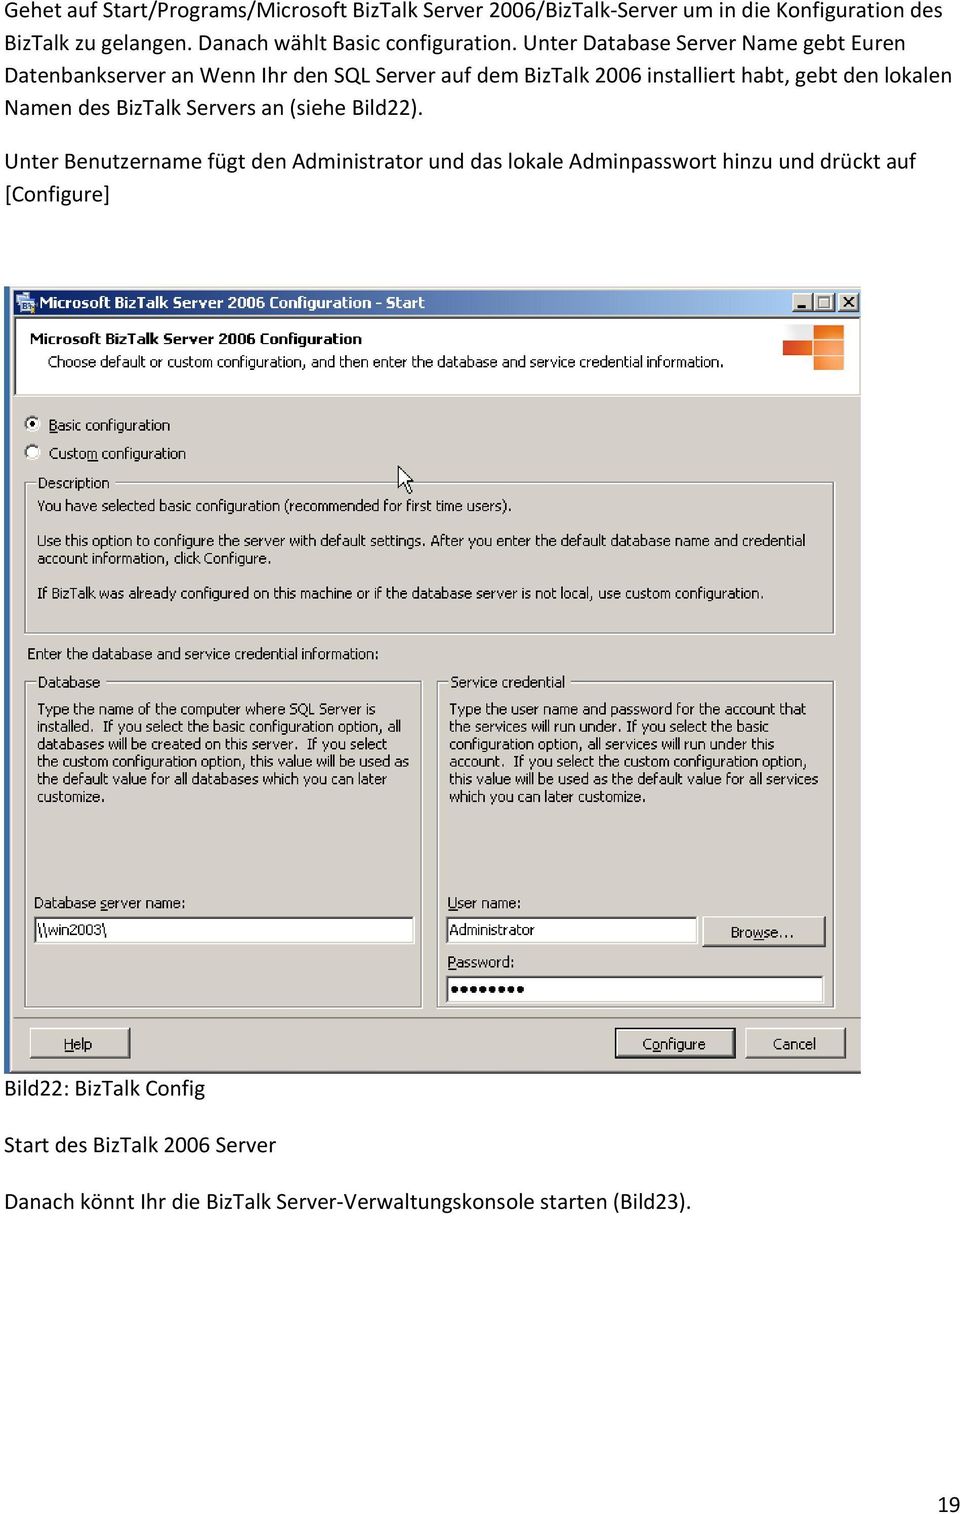 Unter Database Server Name gebt Euren Datenbankserver an Wenn Ihr den SQL Server auf dem BizTalk 2006 installiert habt, gebt den lokalen